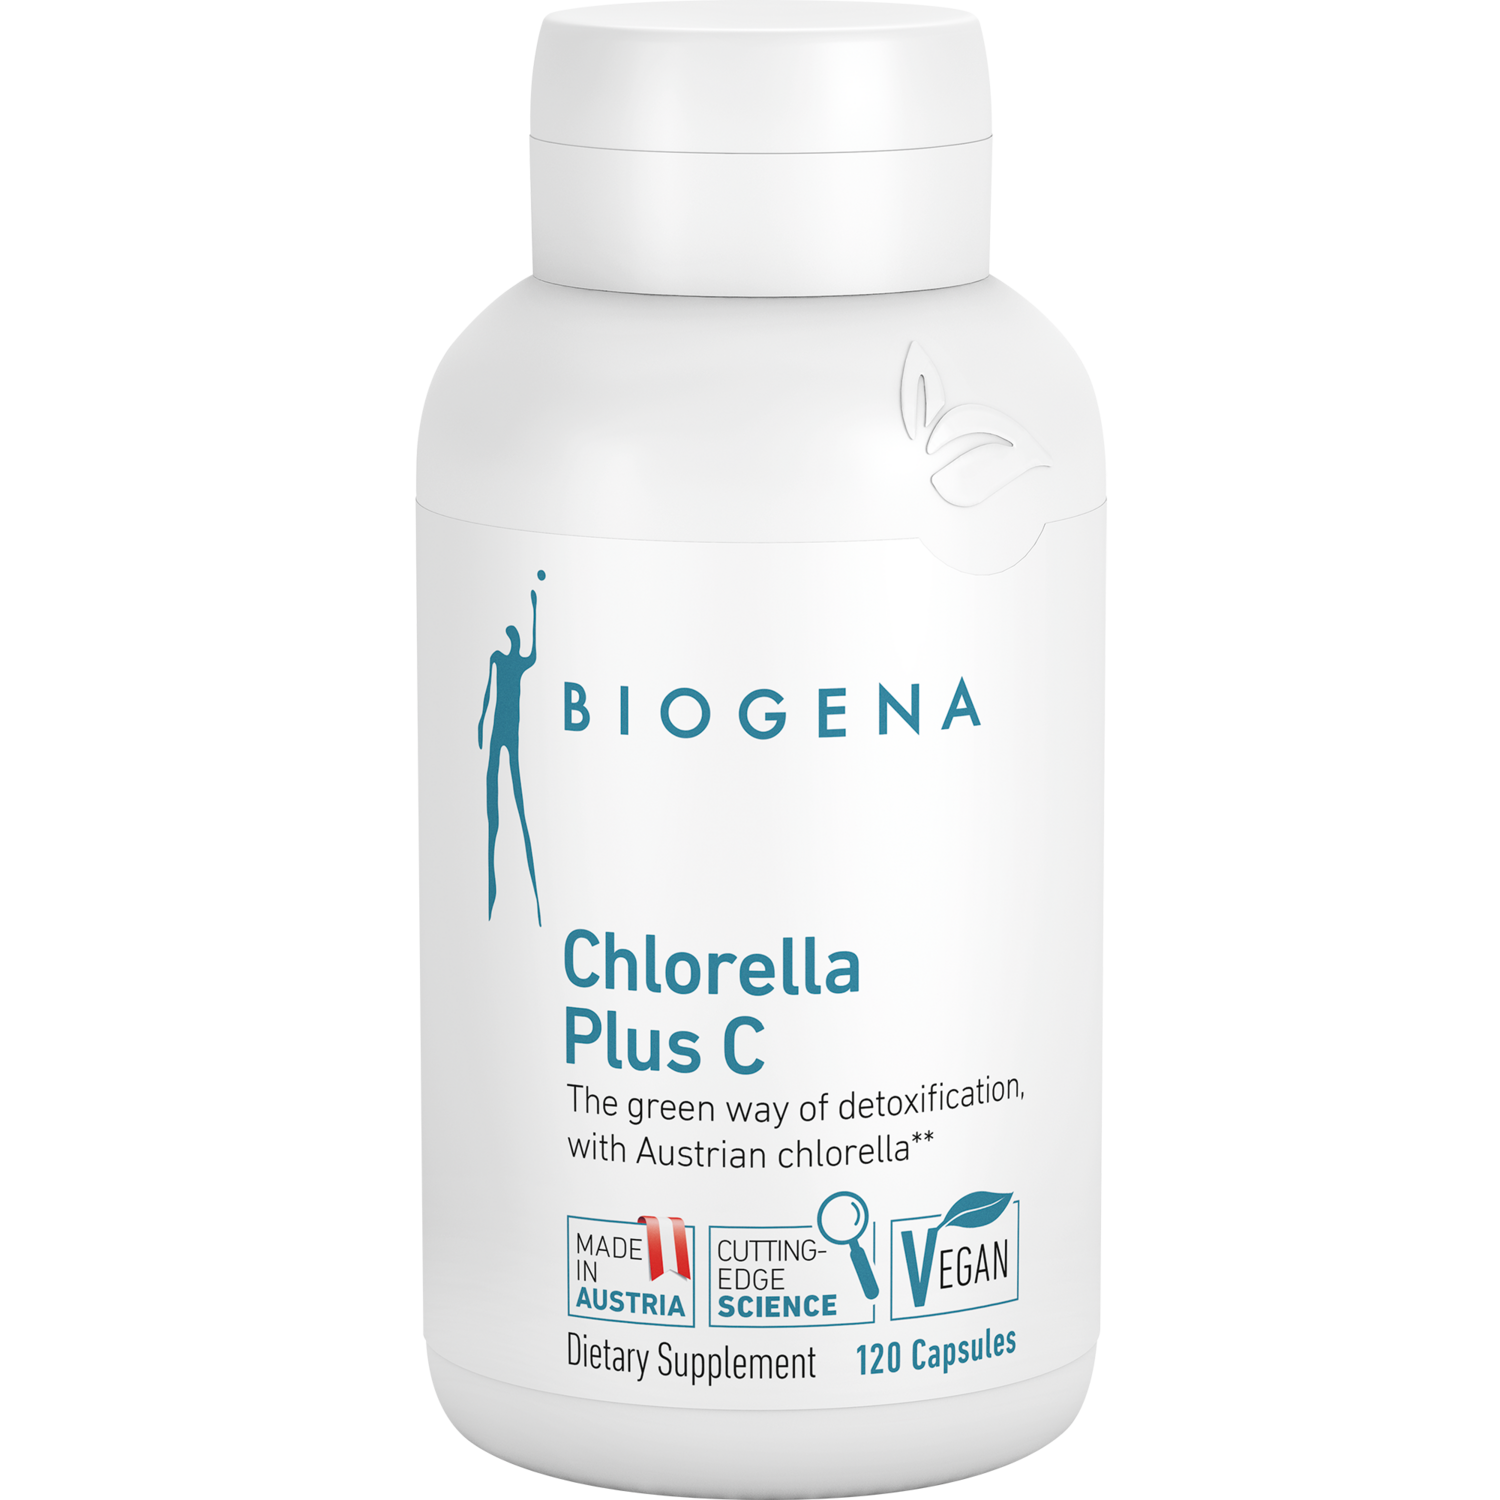 Chlorella Plus C 120 vegcaps Biogena